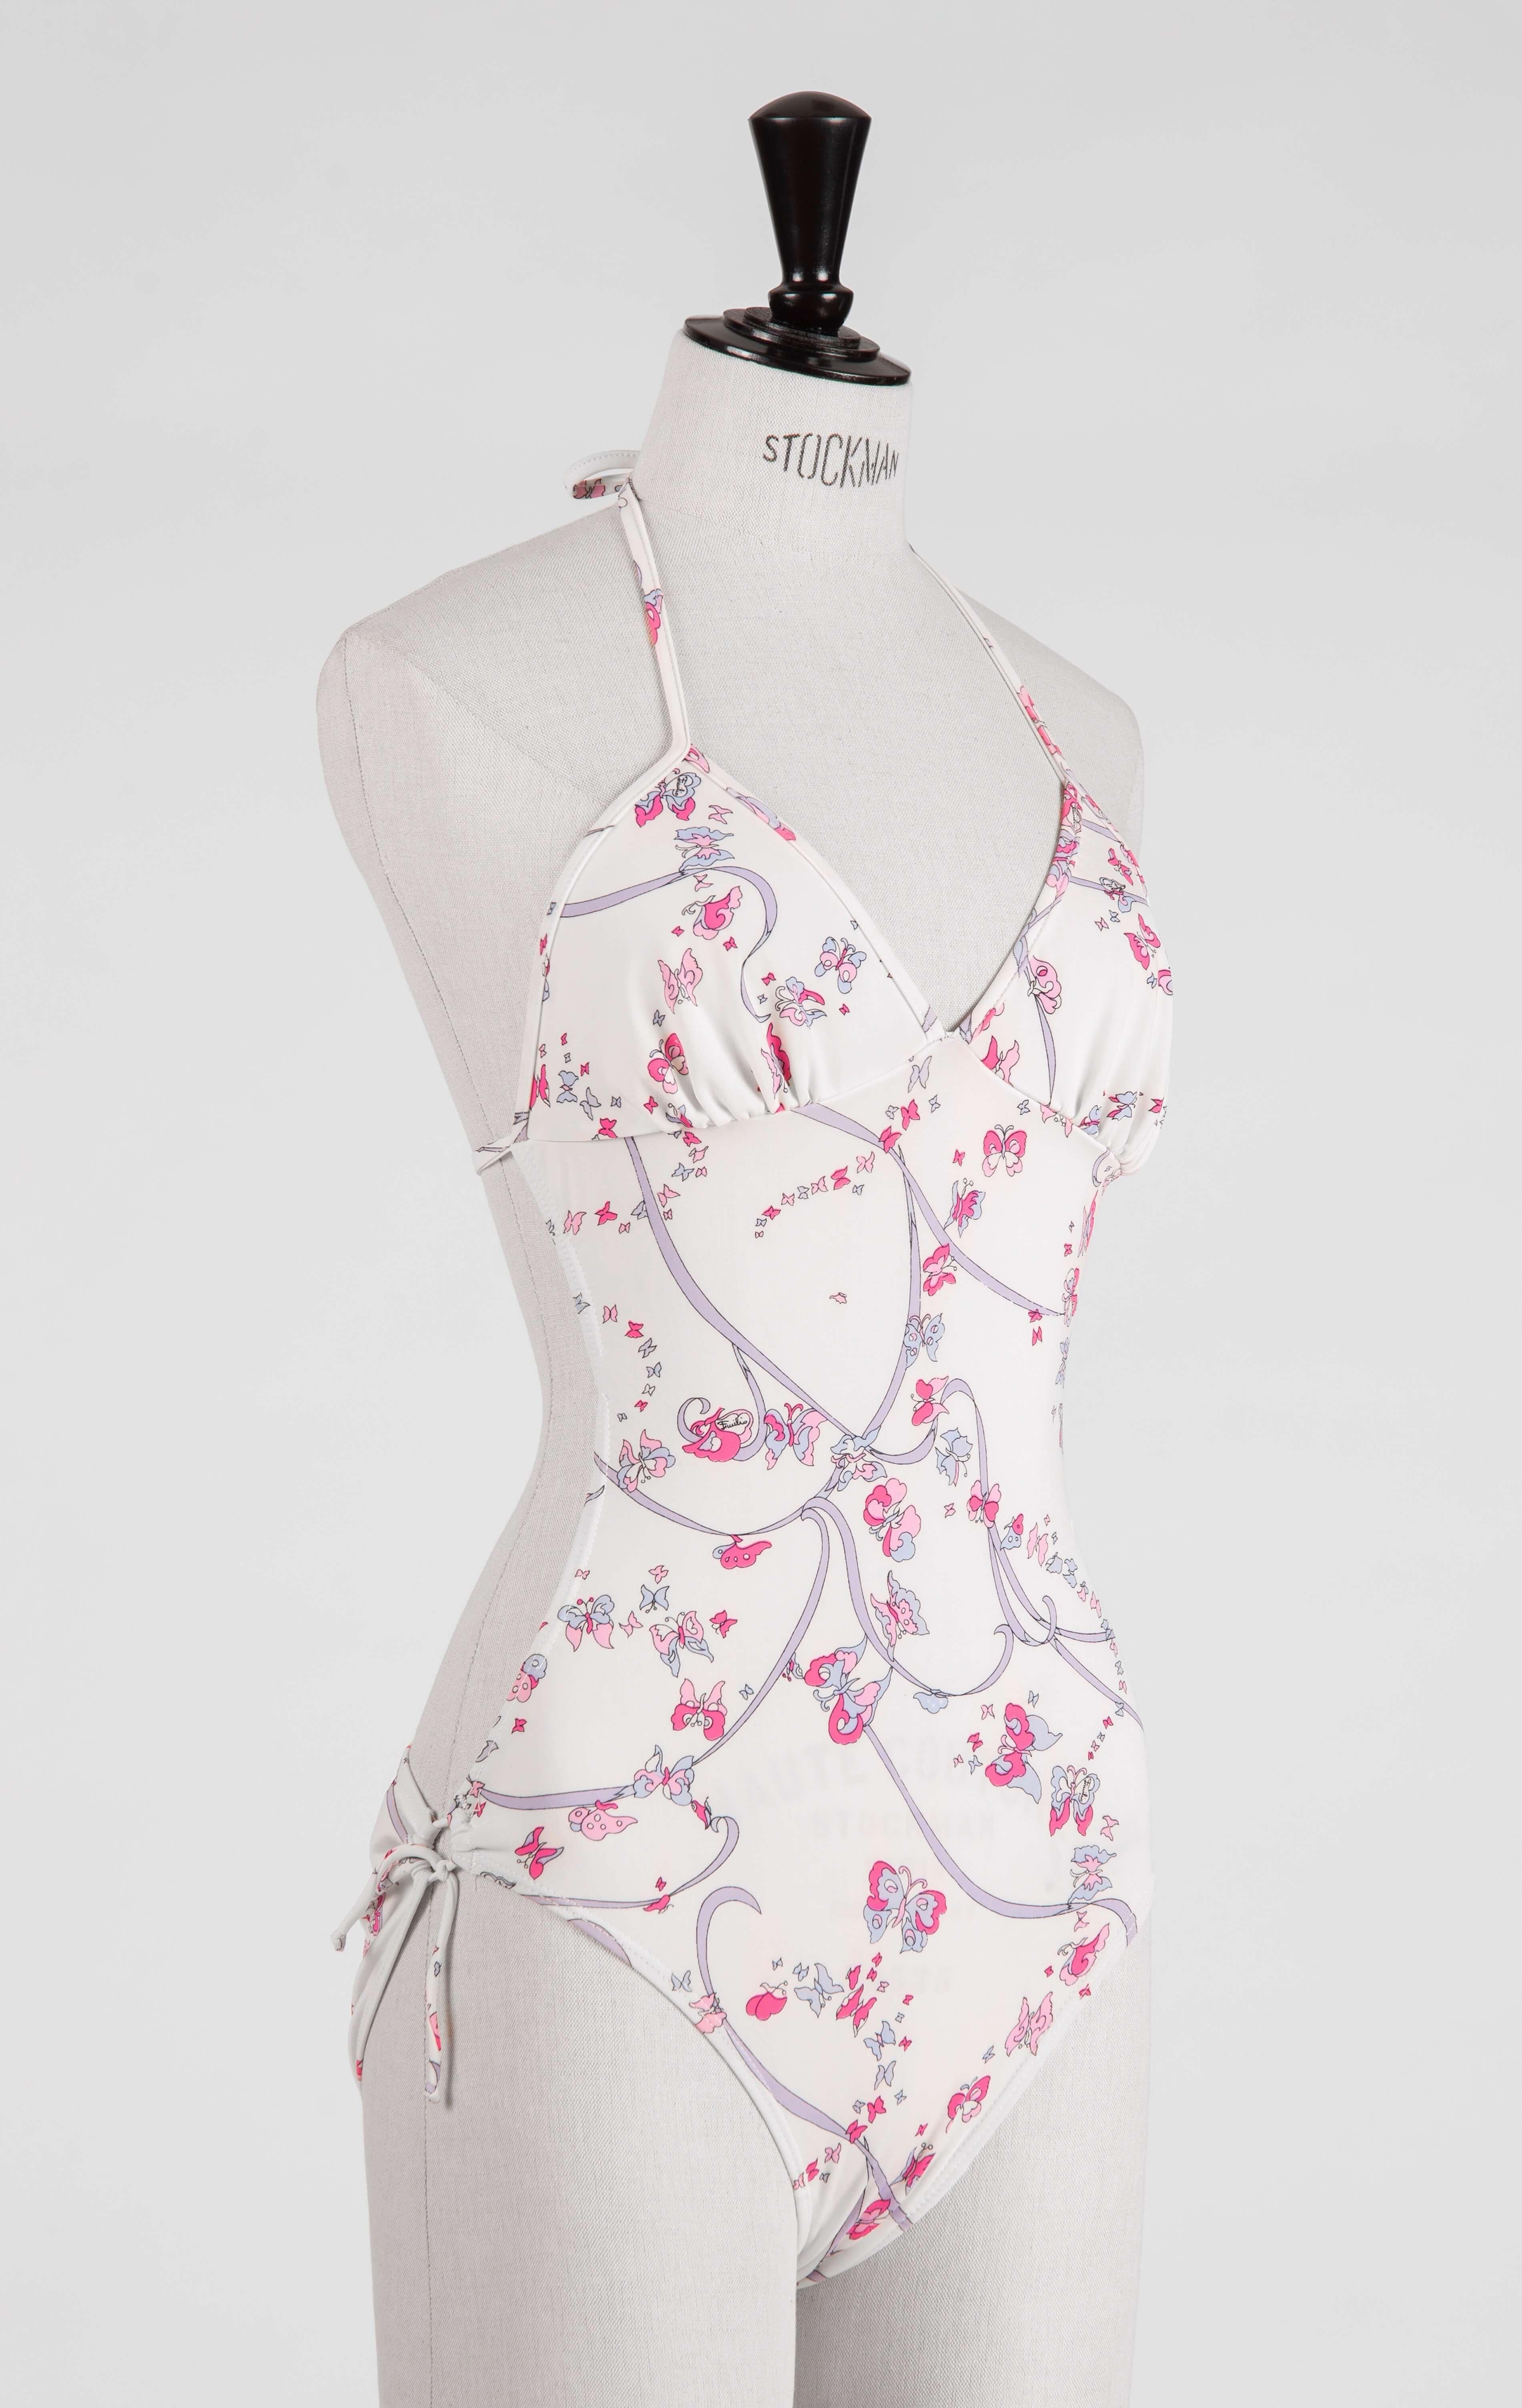 Ajoutez une dose de glamour des années 1970, signature d'Emilio Pucci, à votre collection de vêtements de plage ou de mode vintage. Ce fabuleux et rare maillot de bain une pièce vintage est éclaboussé par l'un des imprimés papillons emblématiques de